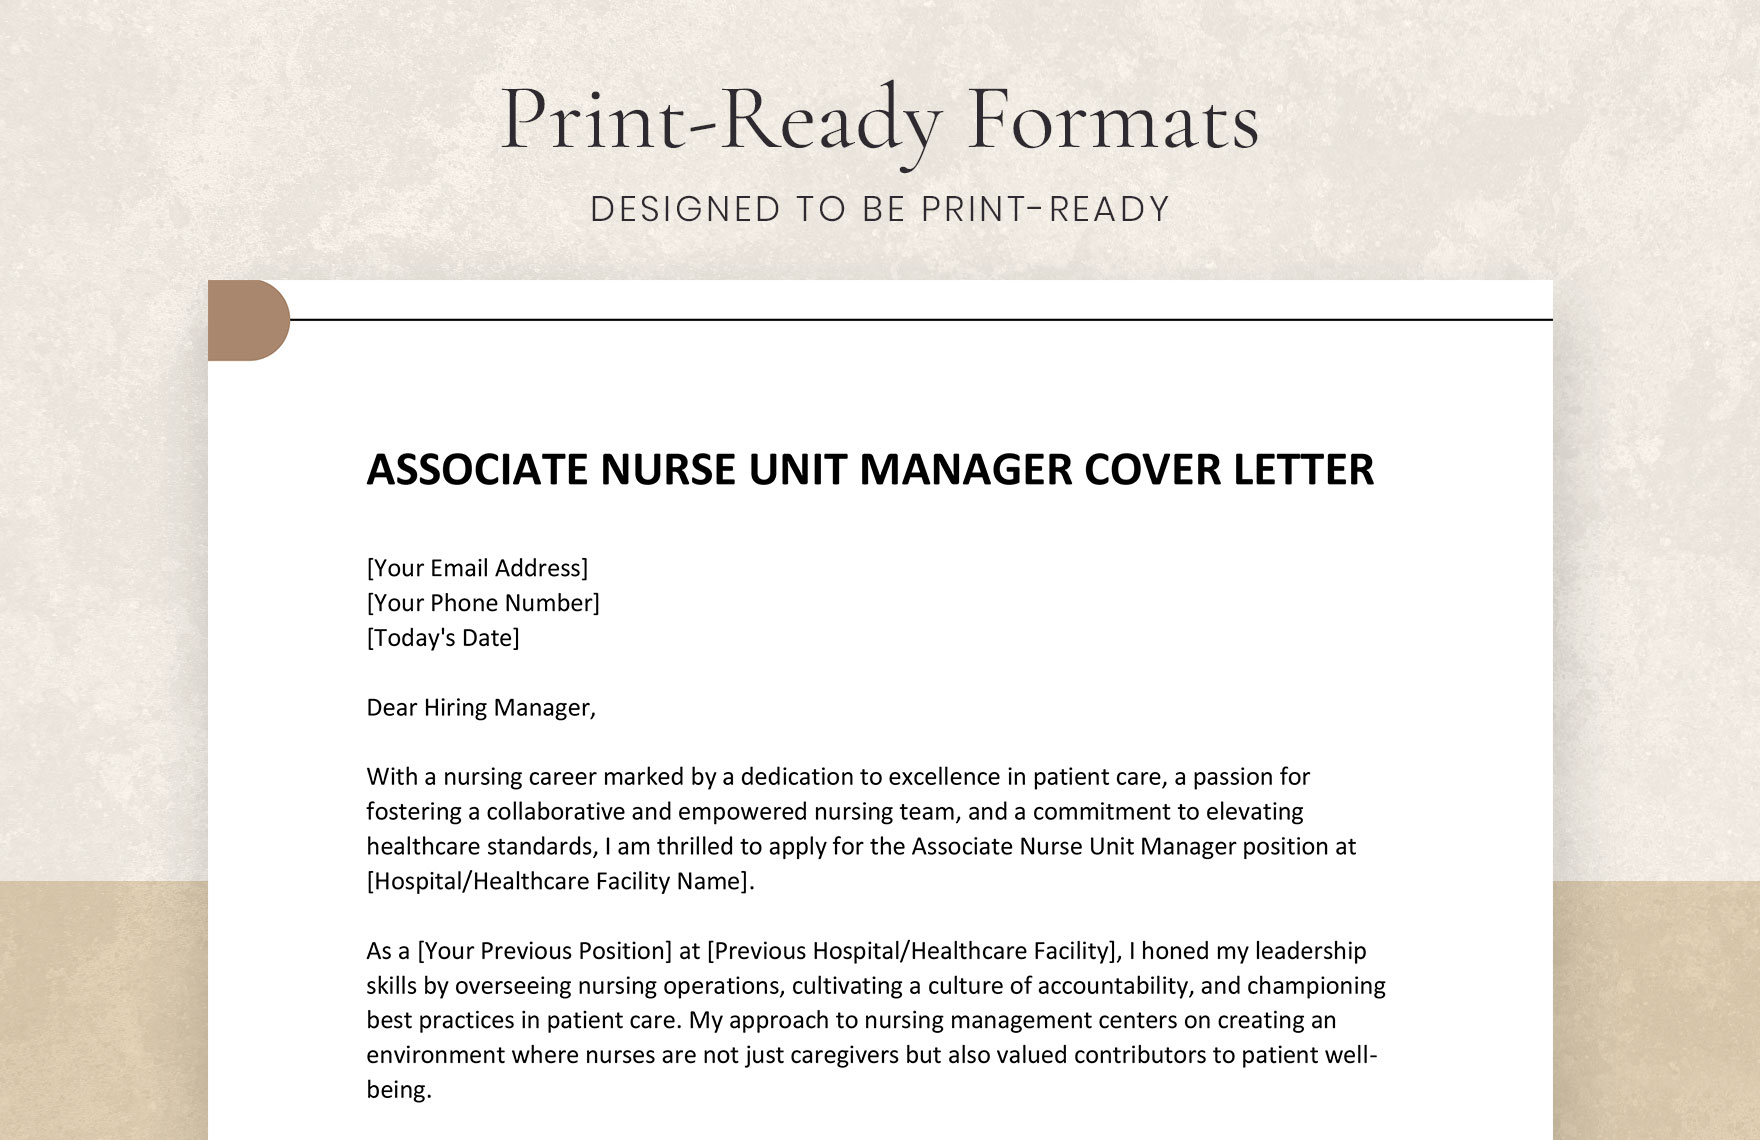 Associate Nurse Unit Manager Cover Letter